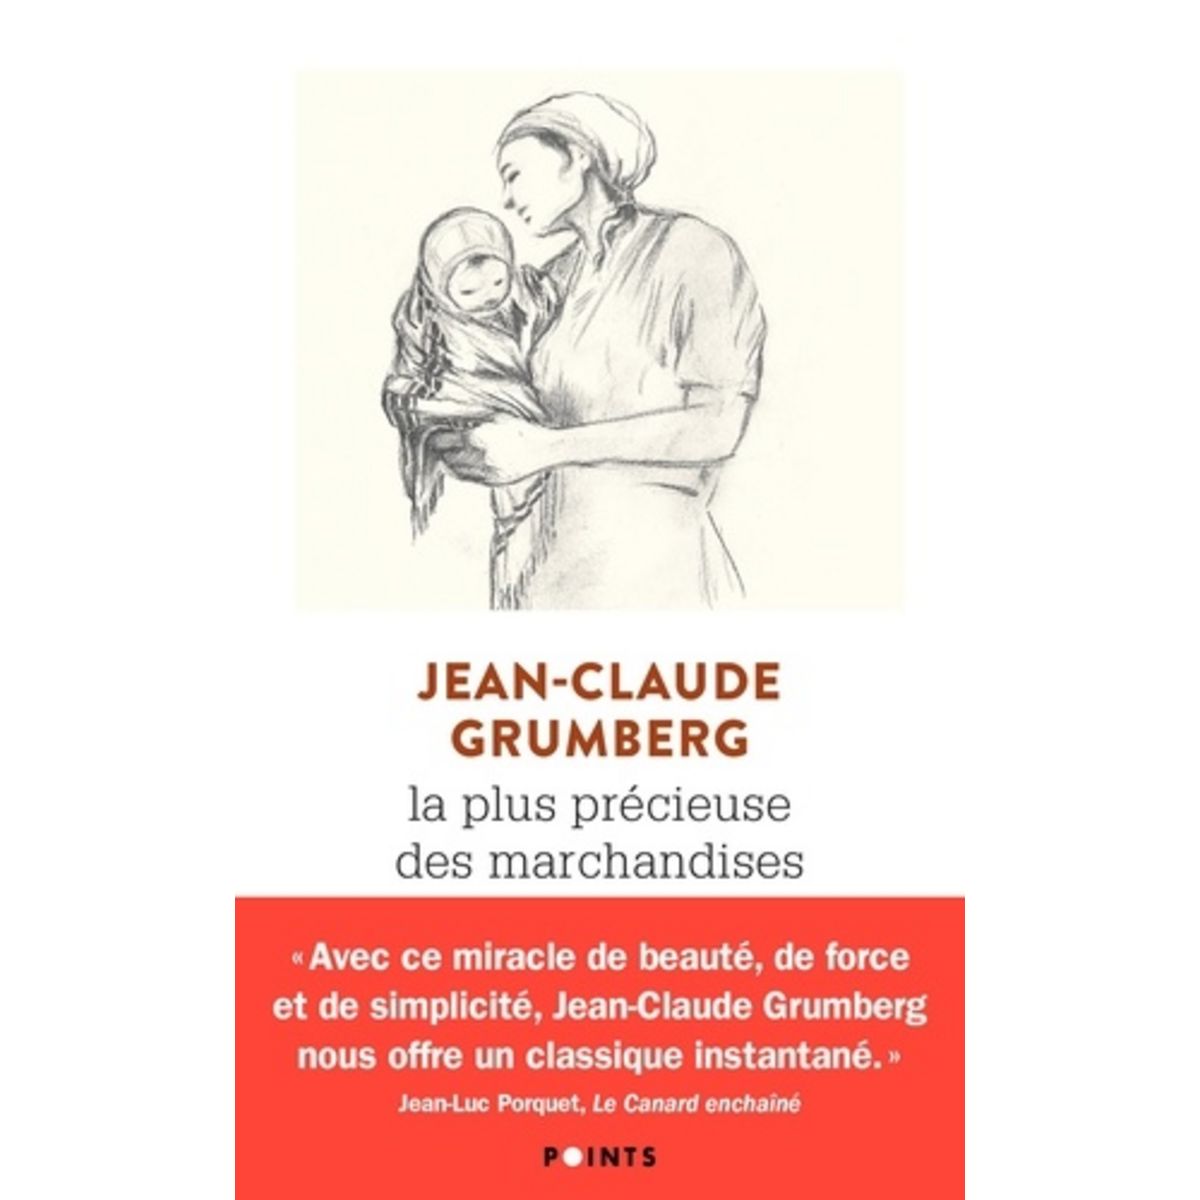 LA PLUS PRÉCIEUSE DES MARCHANDISES - Jean-Claude Grumberg, Charles